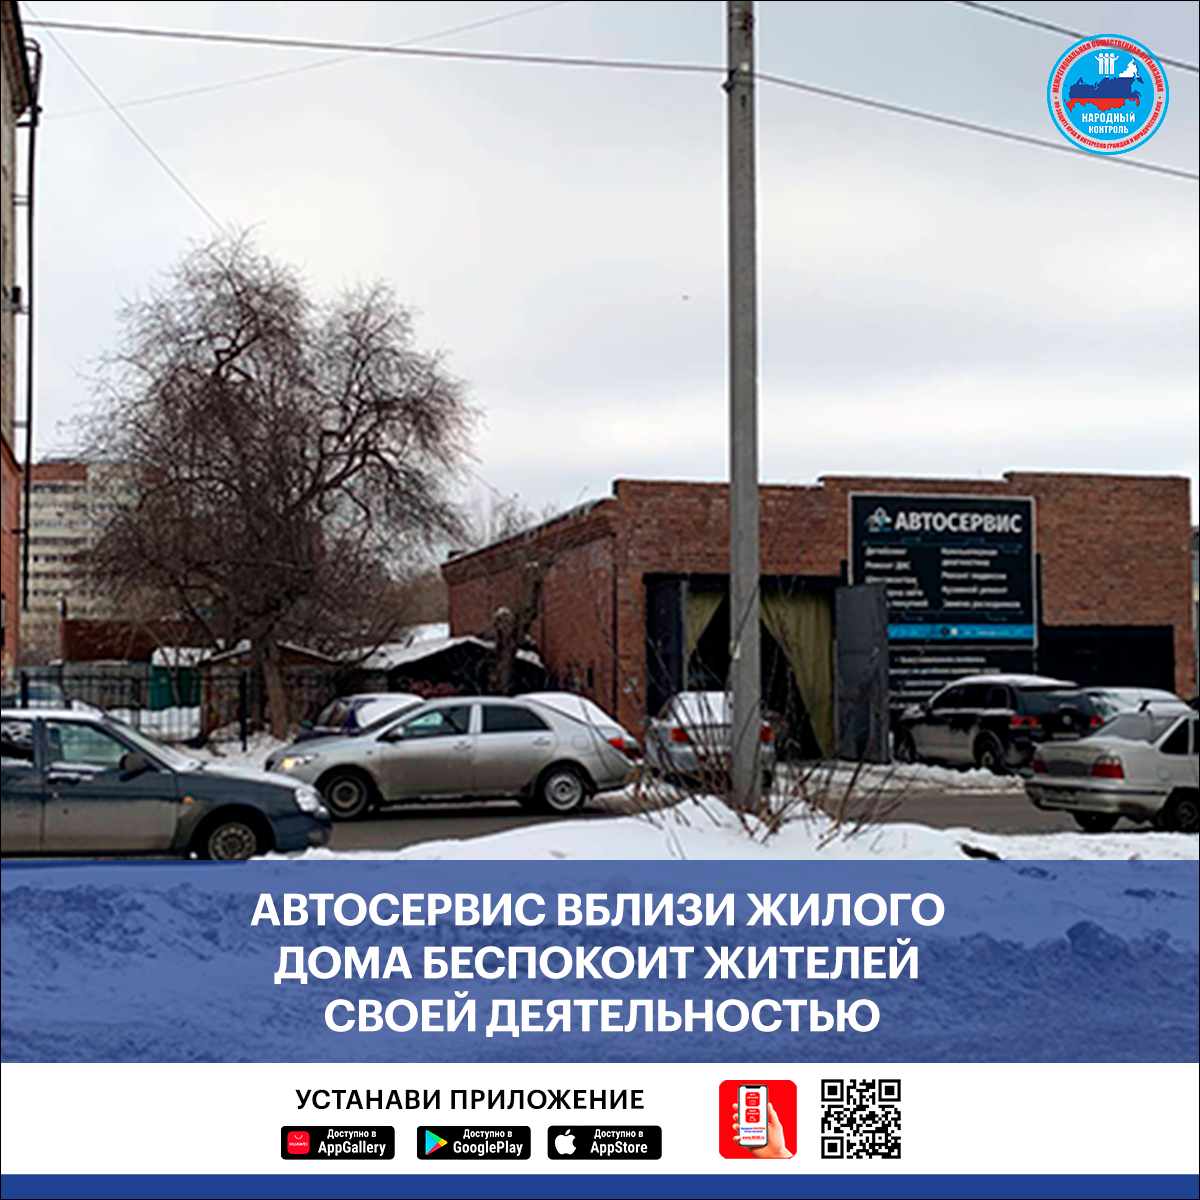 Поступило обращение из Екатеринбурга о нарушениях со стороны автосервиса, расположенного вблизи жилого дома. Добрый день!